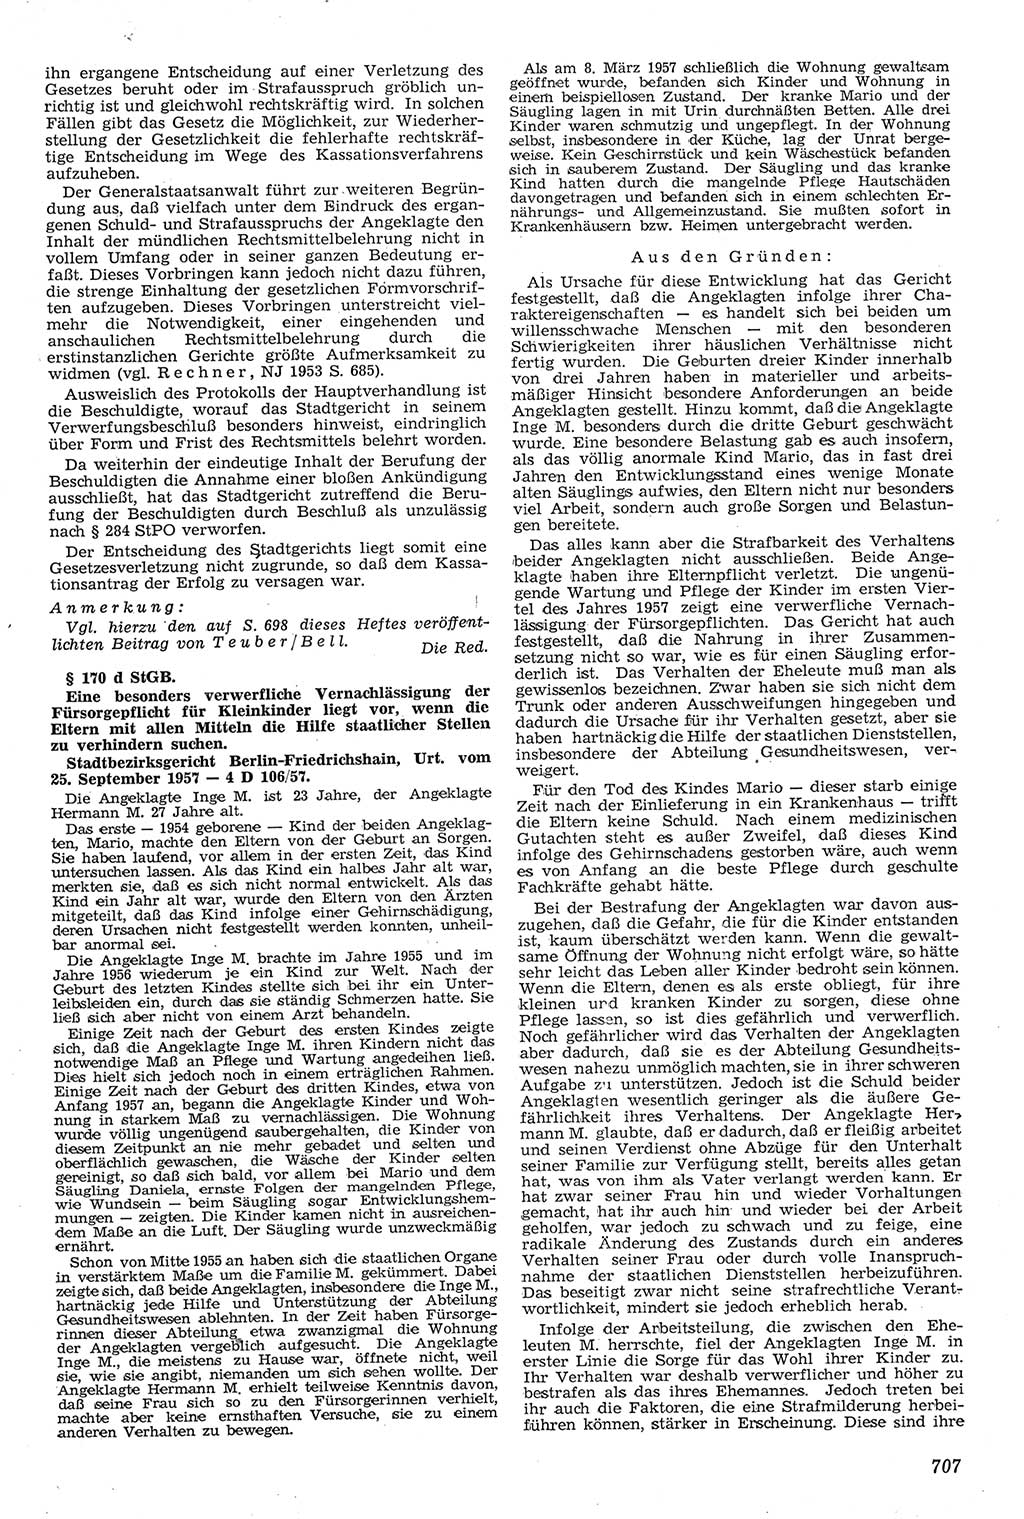 Neue Justiz (NJ), Zeitschrift für Recht und Rechtswissenschaft [Deutsche Demokratische Republik (DDR)], 11. Jahrgang 1957, Seite 707 (NJ DDR 1957, S. 707)